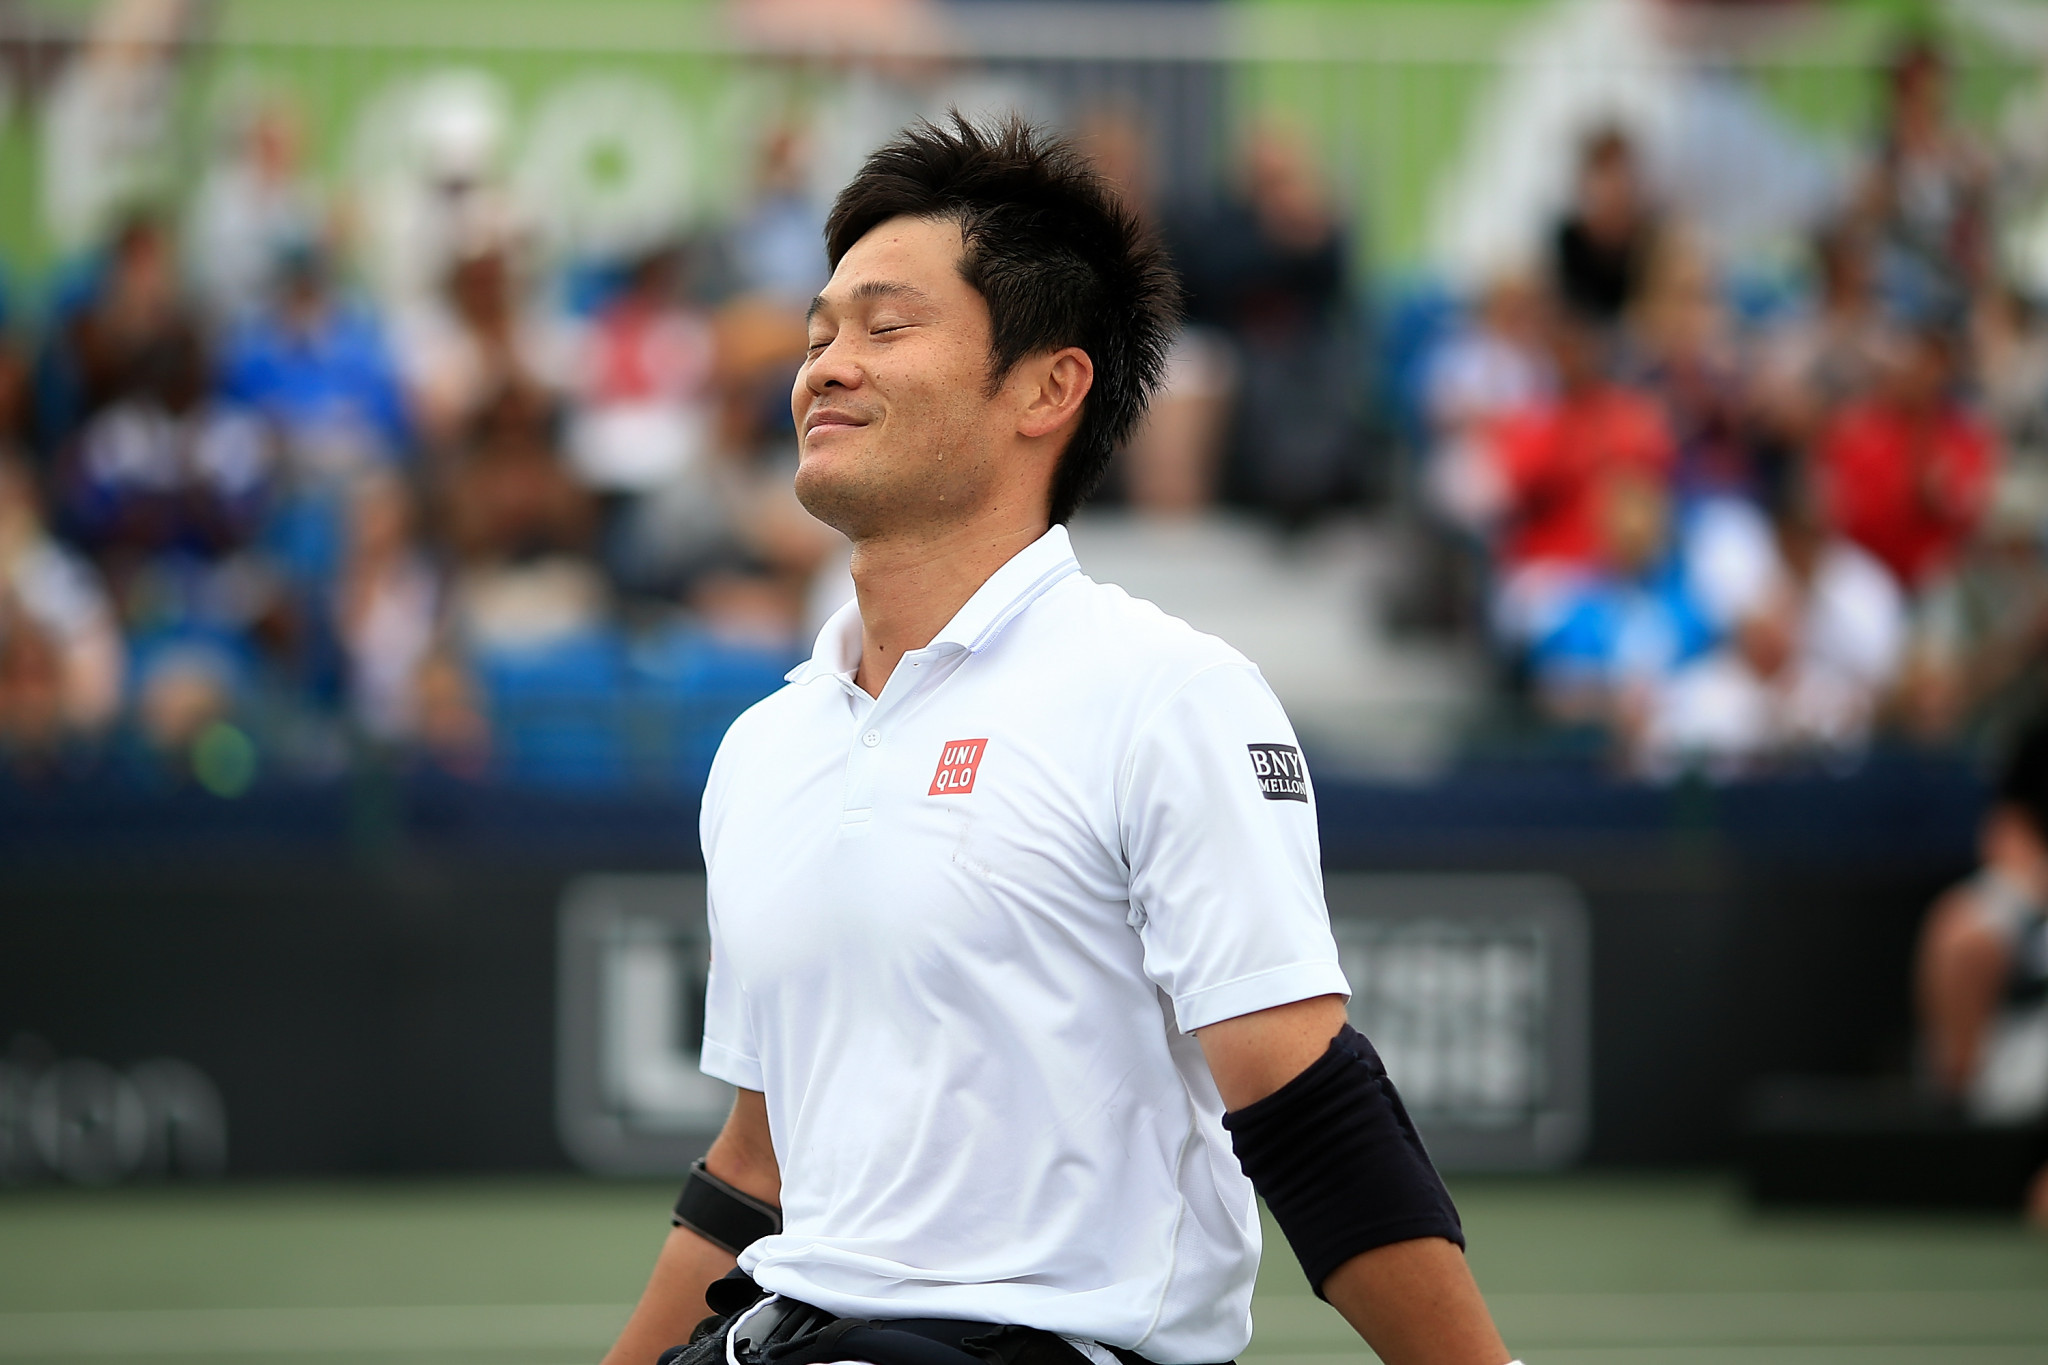 Kunieda progress to men's wheelchair tennis singles semi-finals at US Open